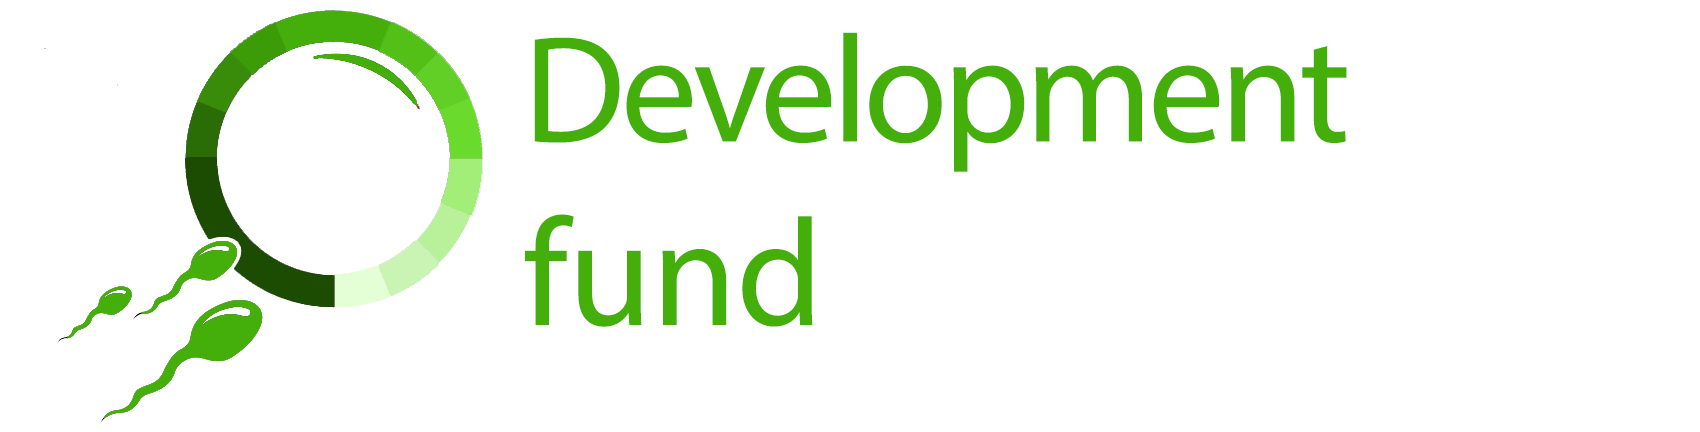 Development fund logo